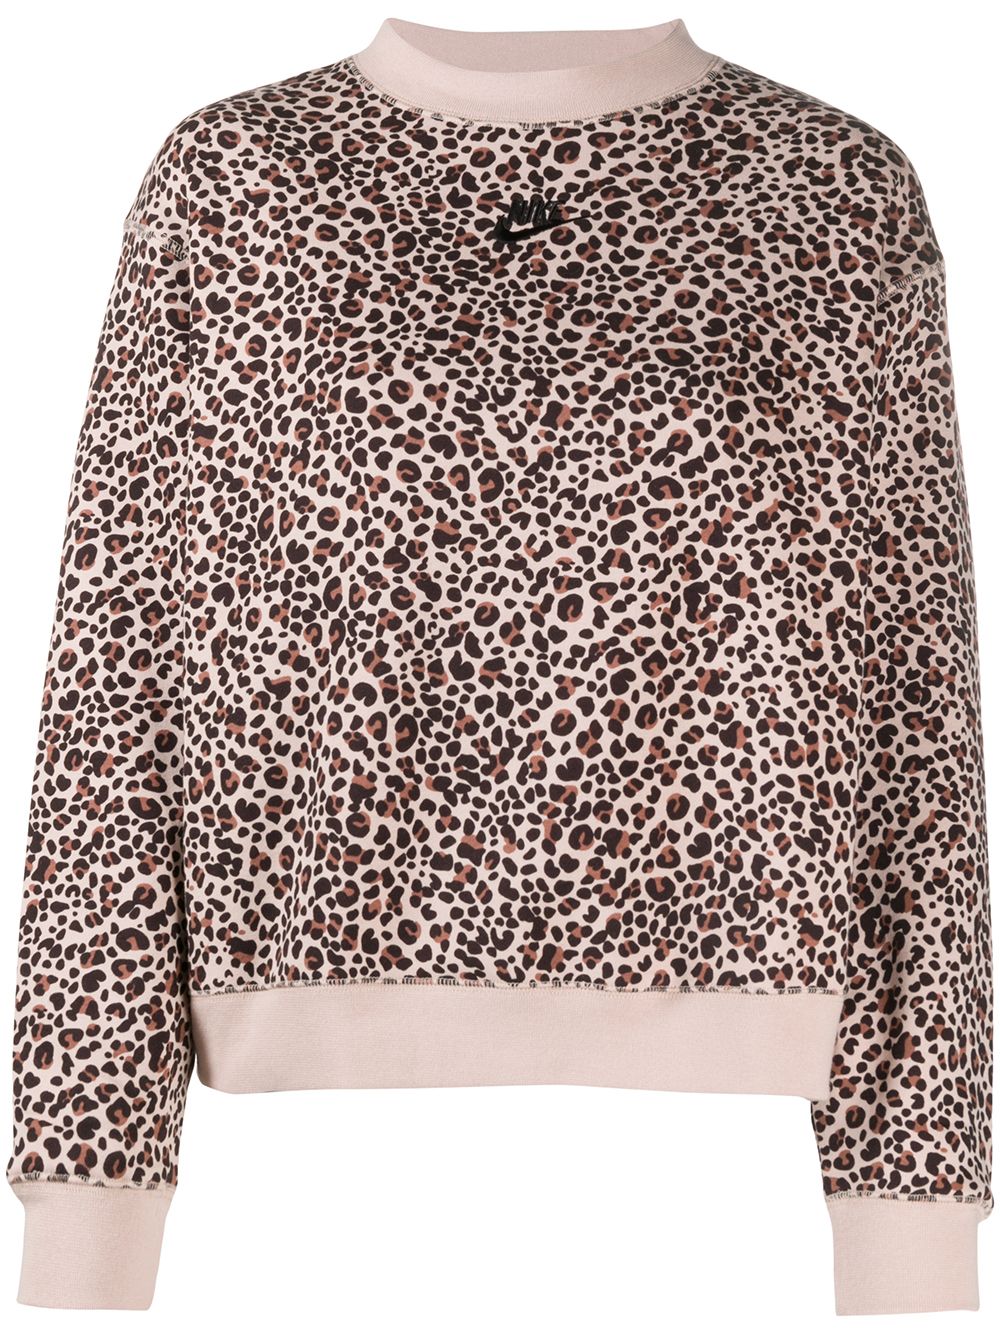 nike leopard hoodie